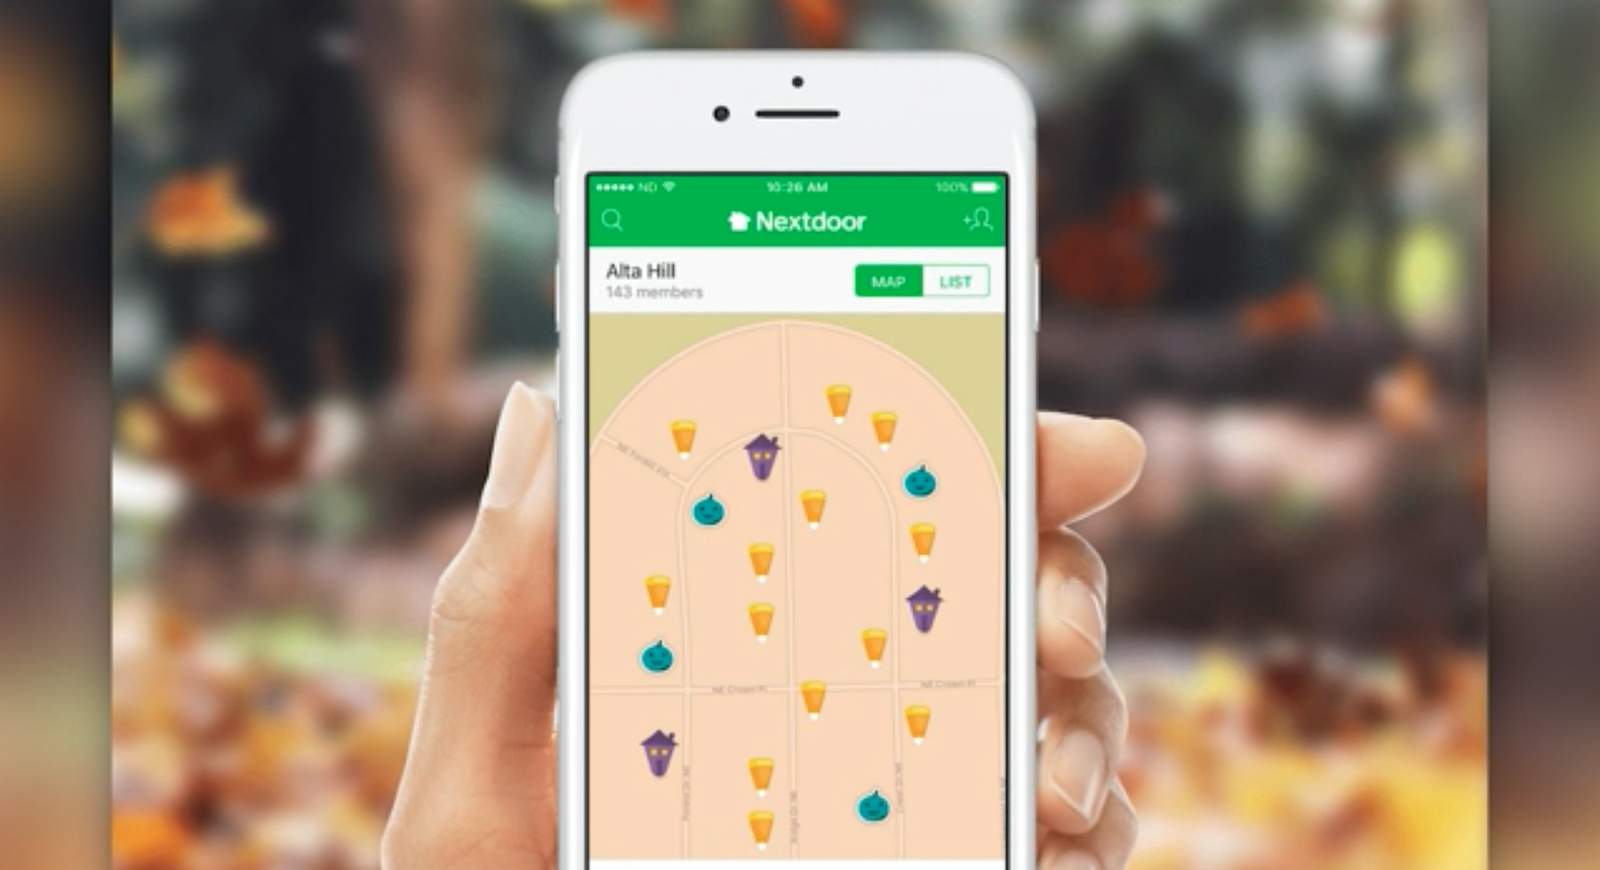 Nextdoor app adds new feature for Halloween during pandemic